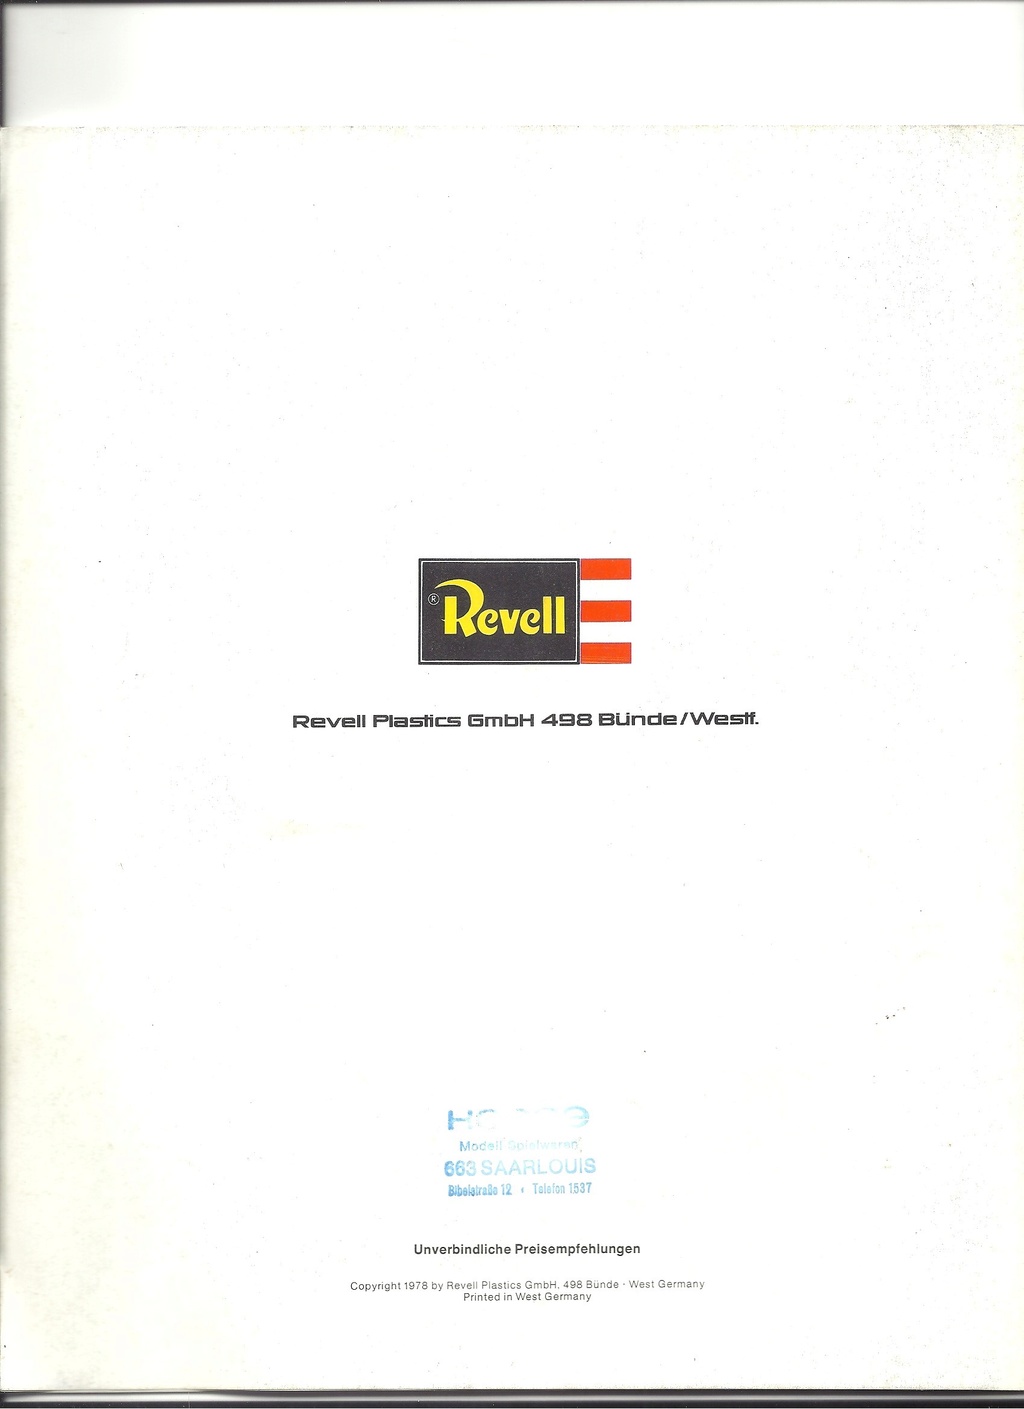 [REVELL 1978] Catalogue nouveautés 1978 Revel730